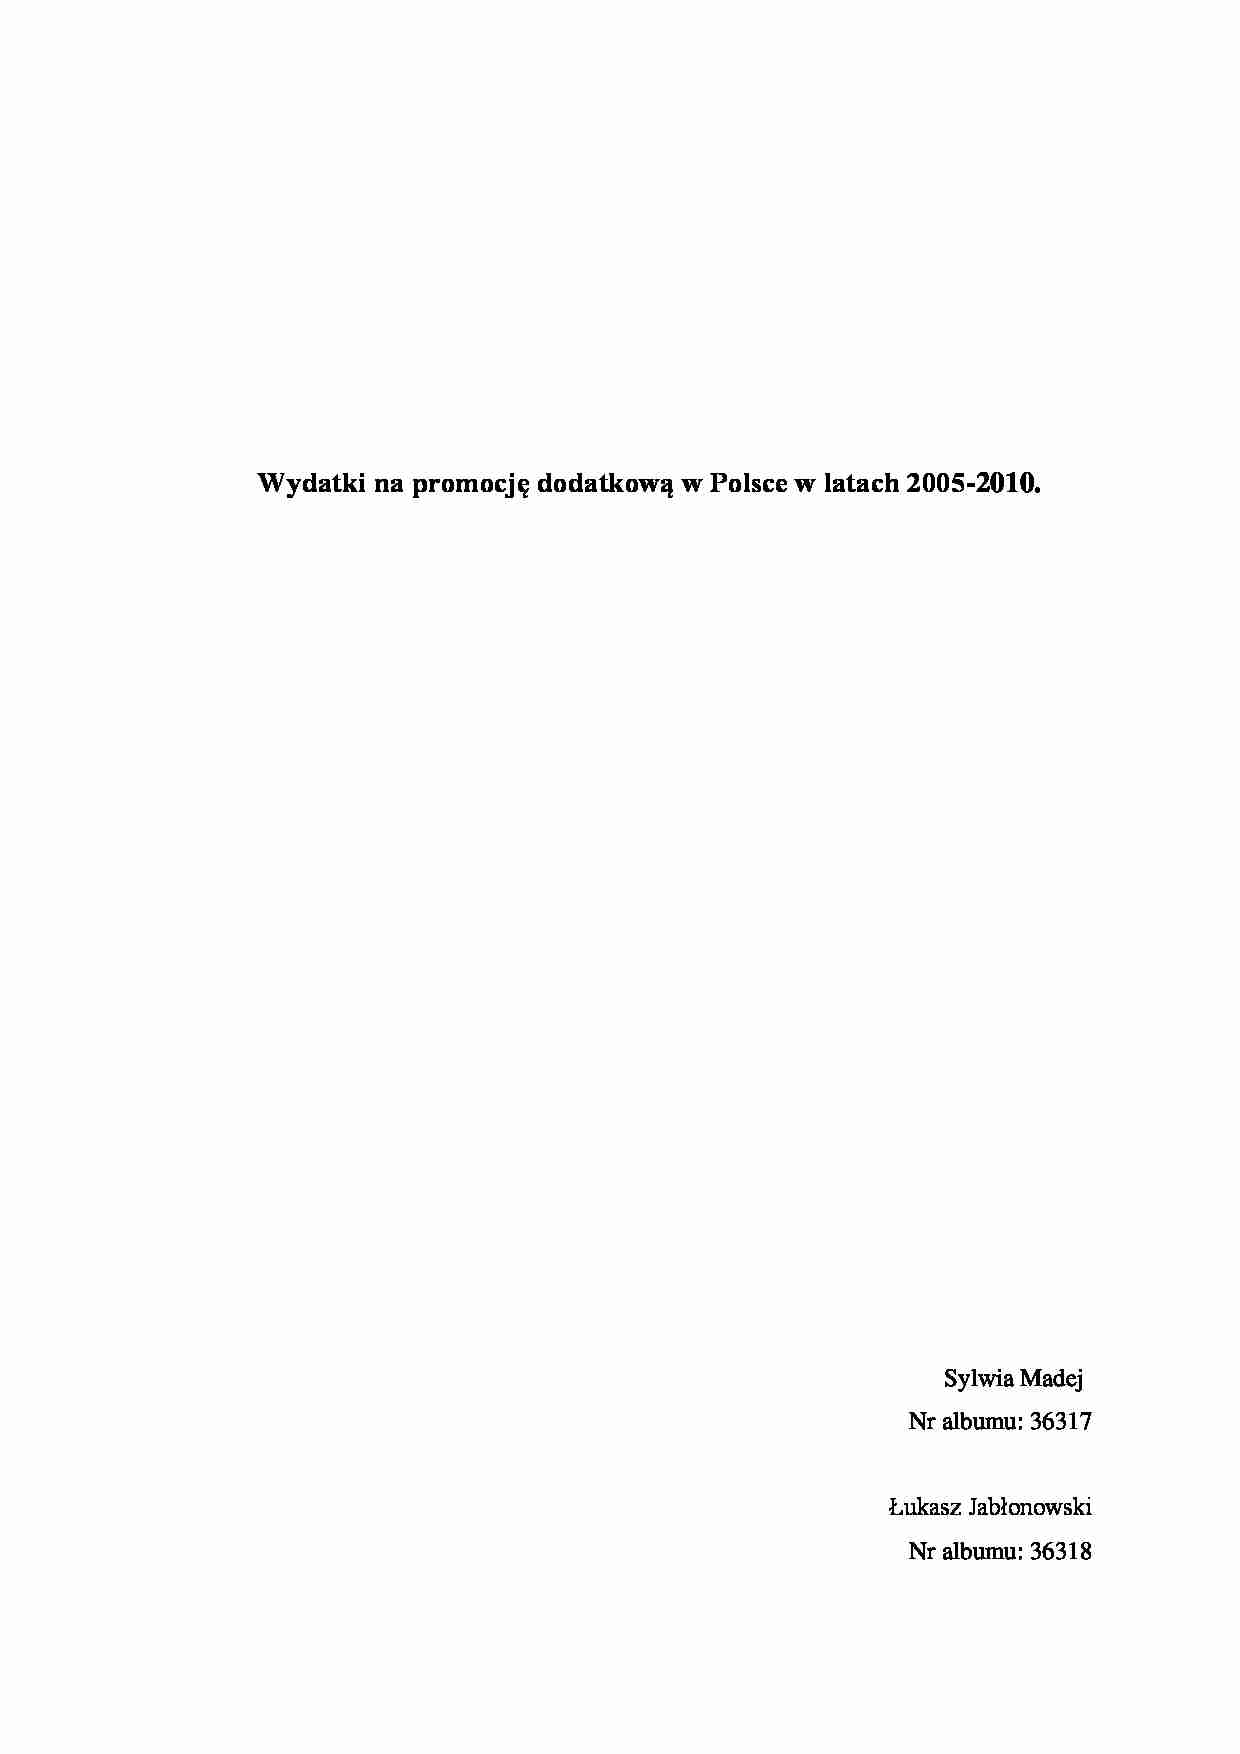 Wydatki na promocję dodatkową w Polsce w latach 2005-2010 - strona 1